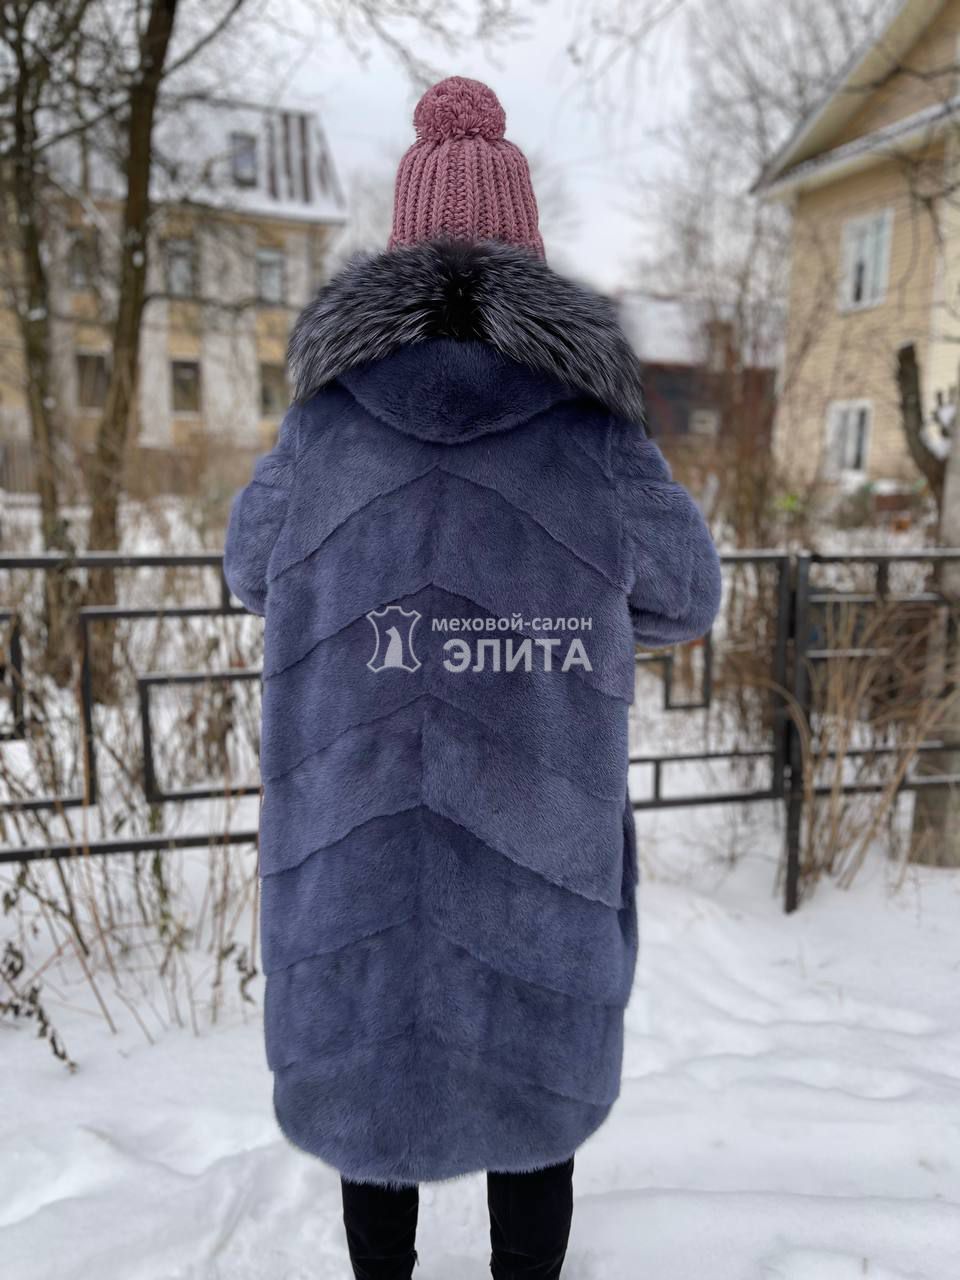 Пальто из норки S-18237 р-р 48-52, цена 143600 рублей в интернет-магазине кожи и меха ЭЛИТА. Вид 2